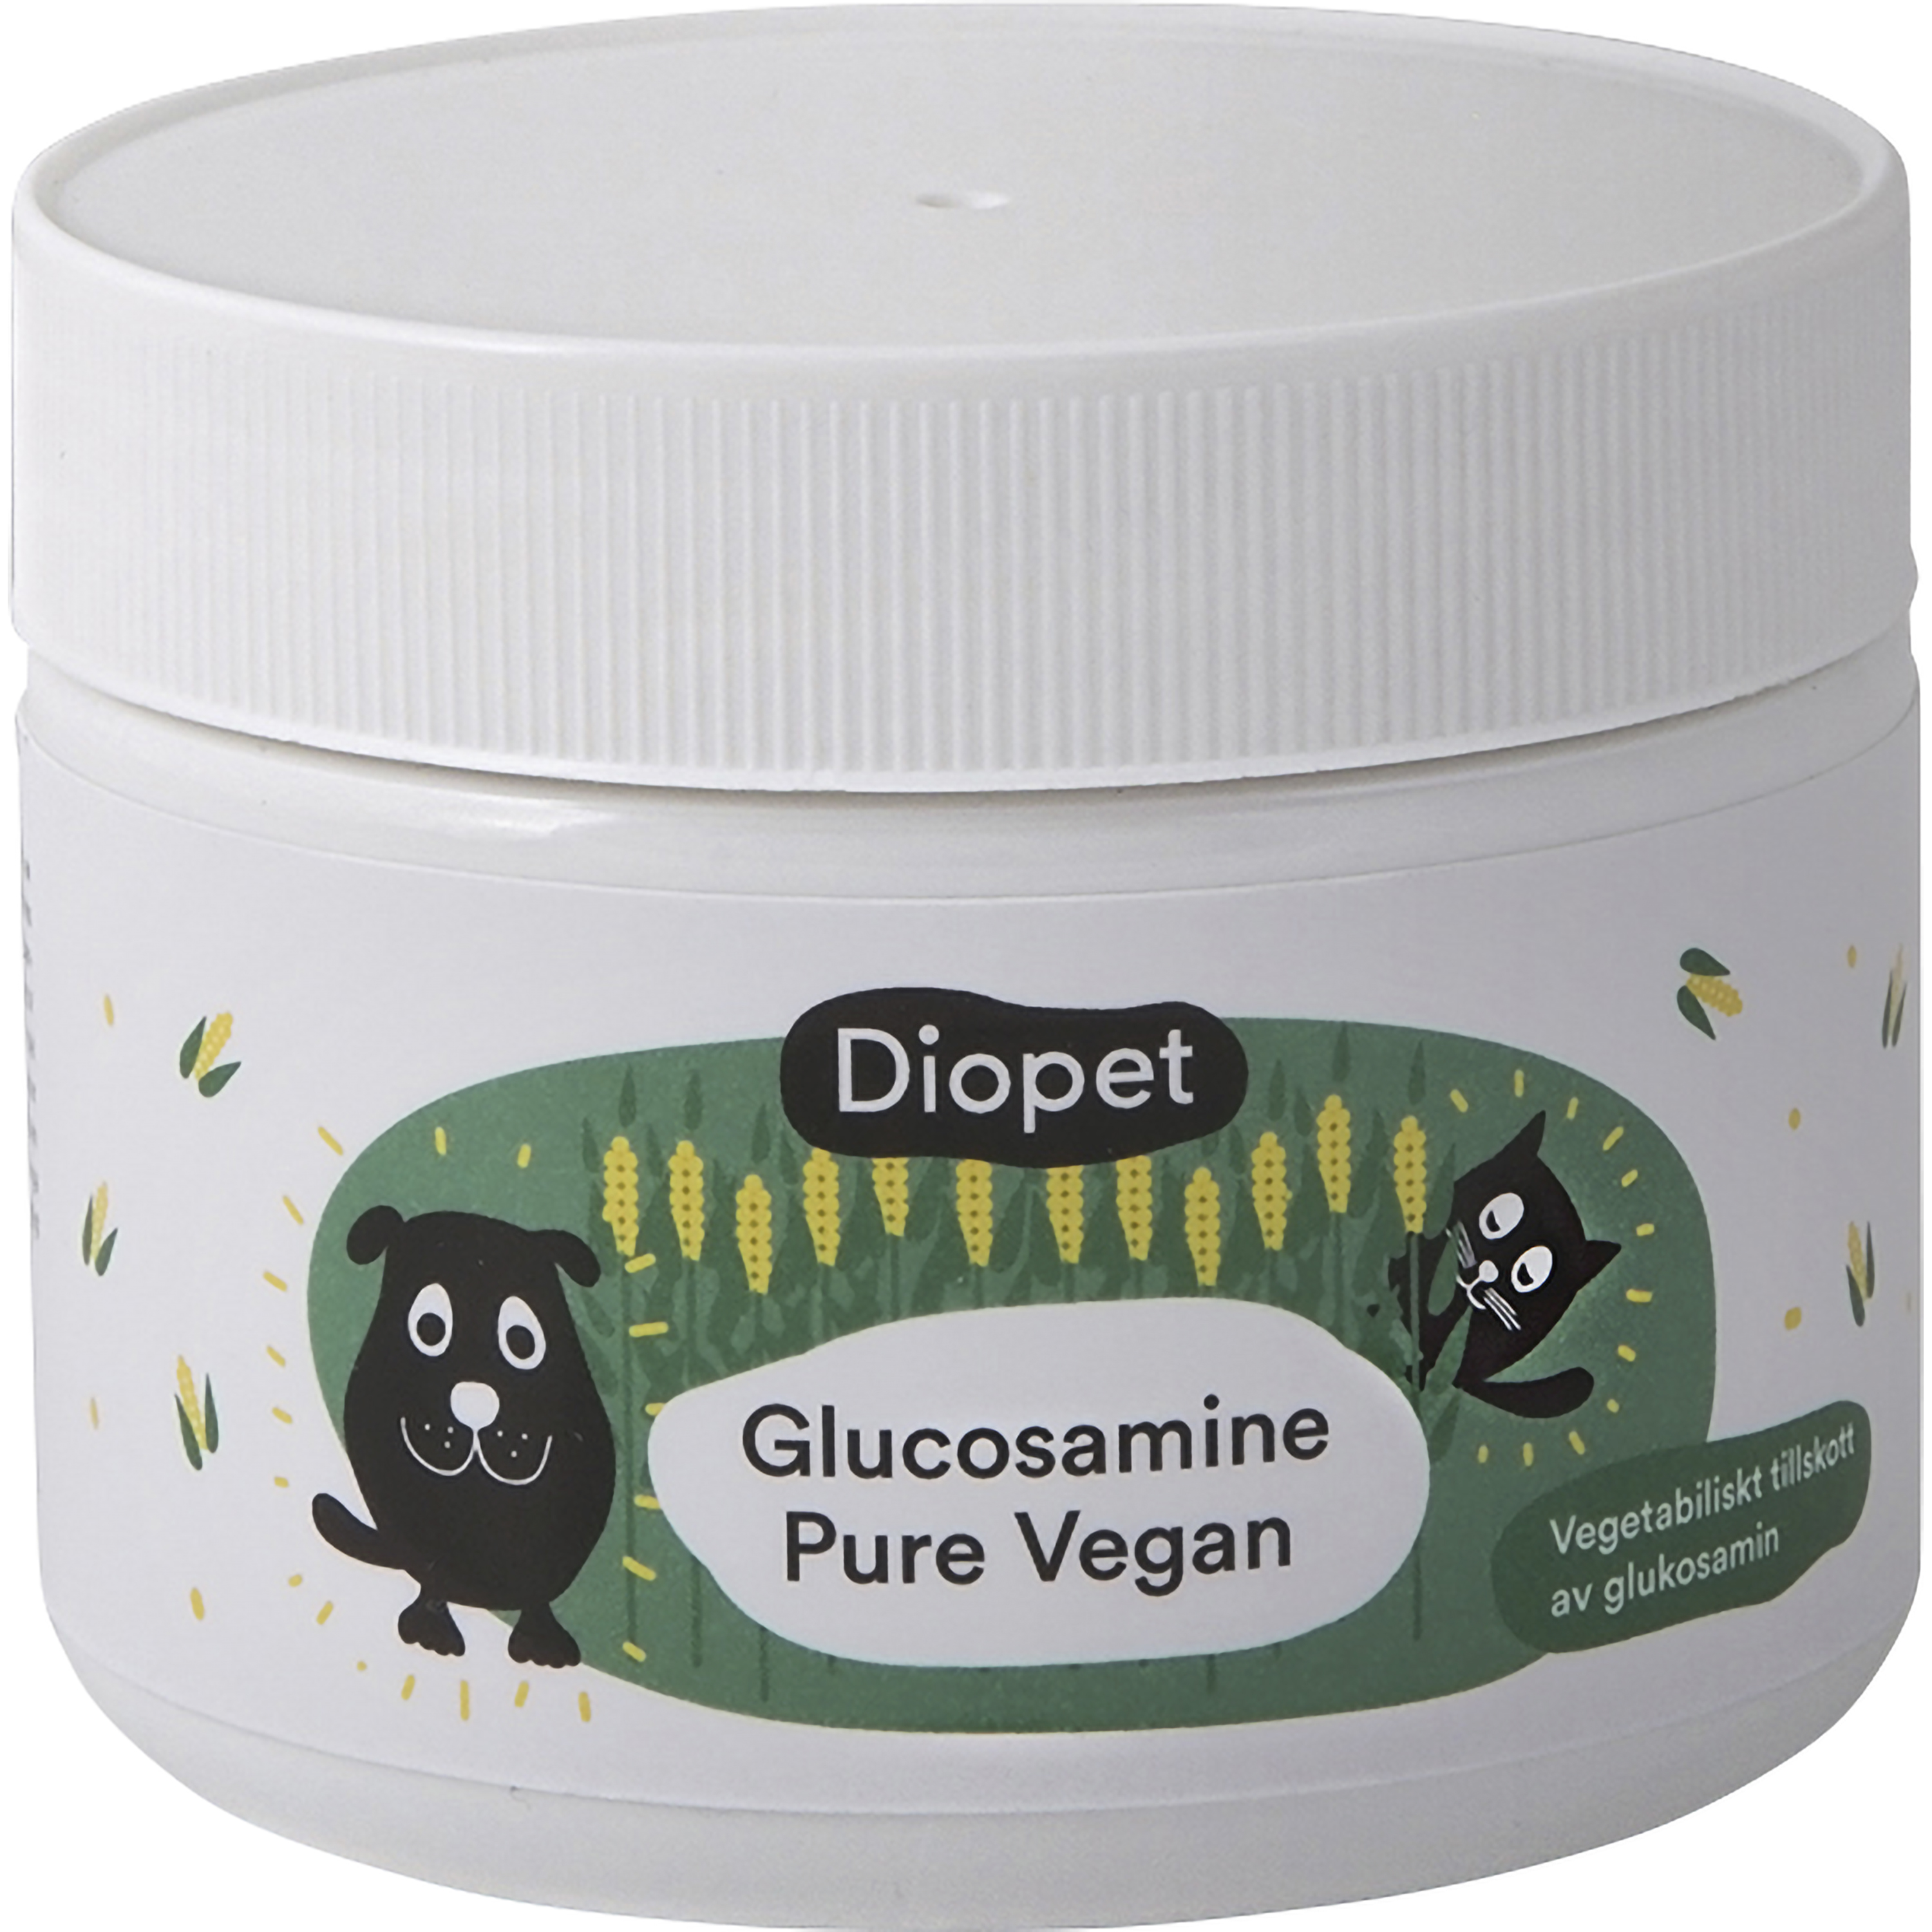 Kosttillskott Diopet Glucosamine Pure Vegan 150g